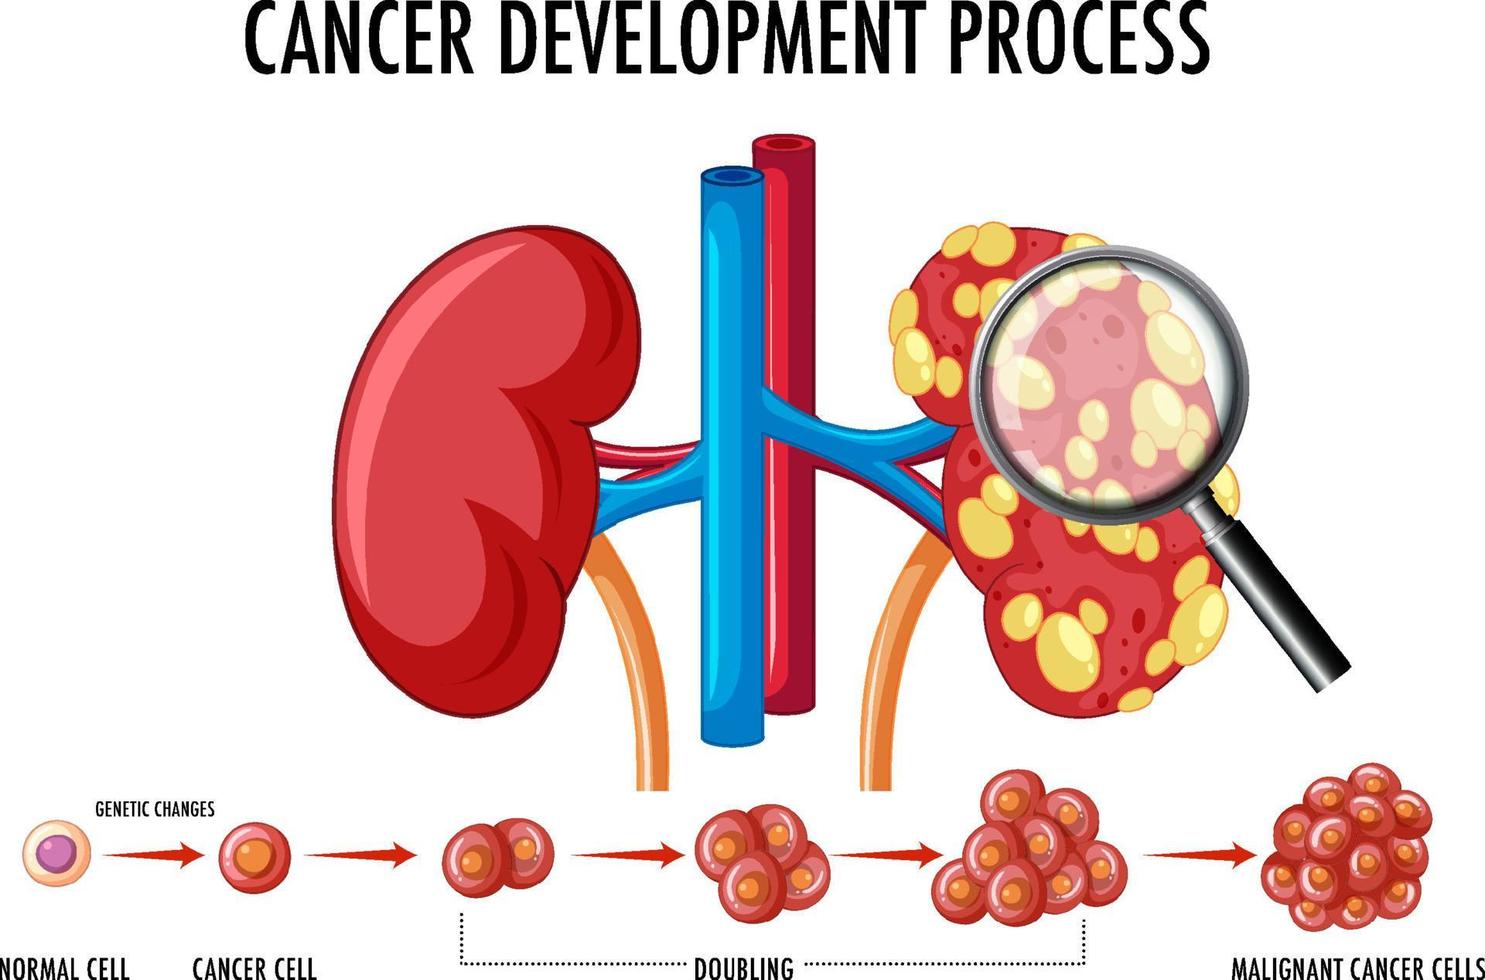 schéma montrant le processus de développement du cancer vecteur